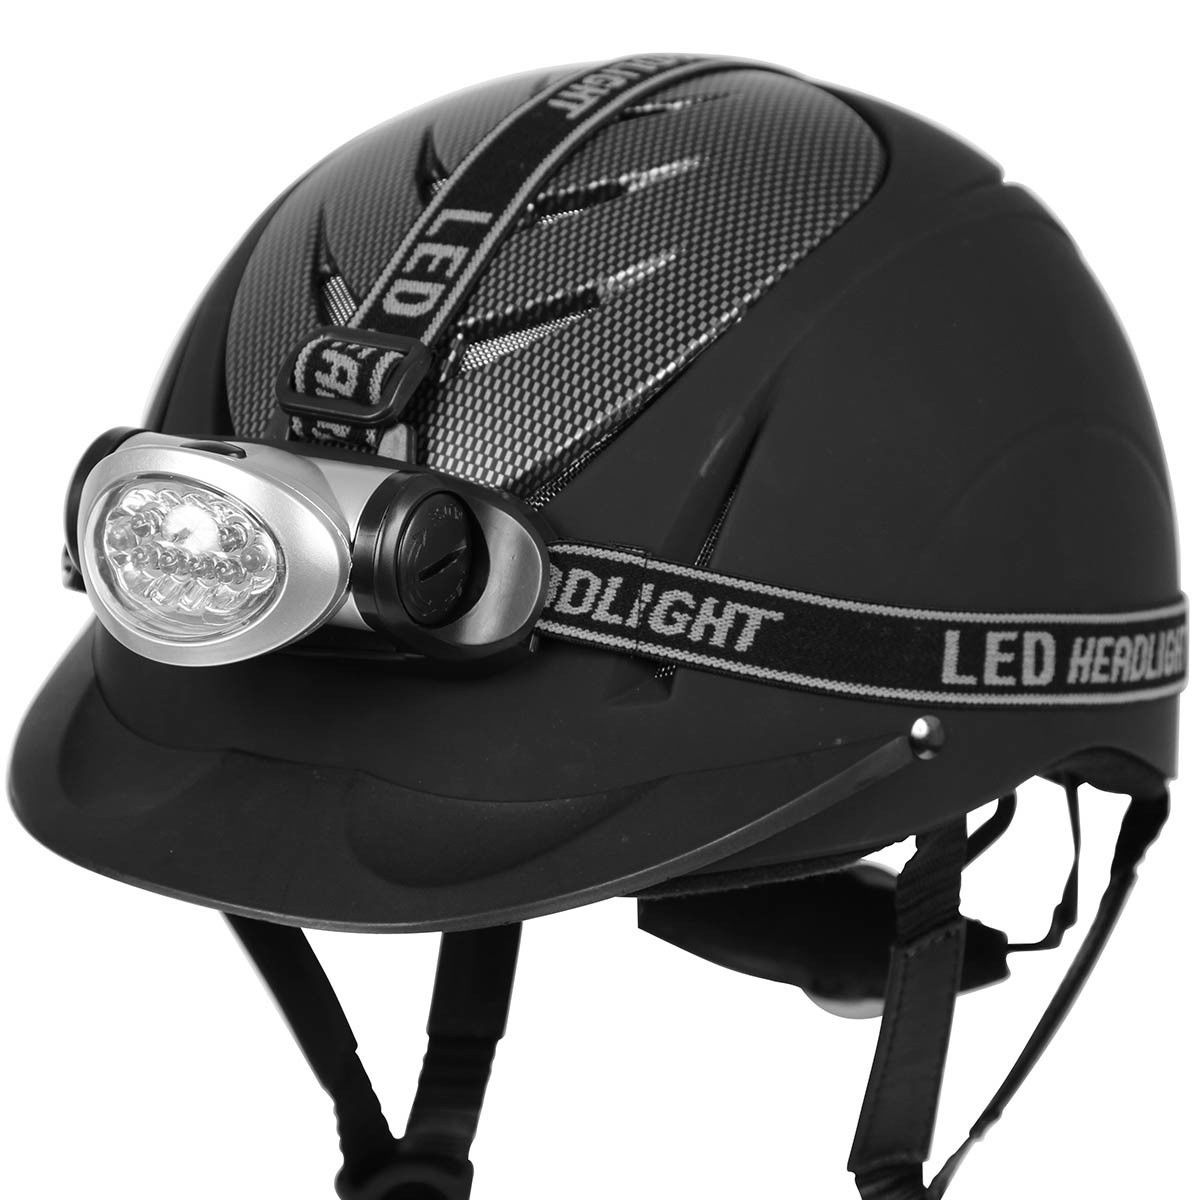 Helmet lamp LED